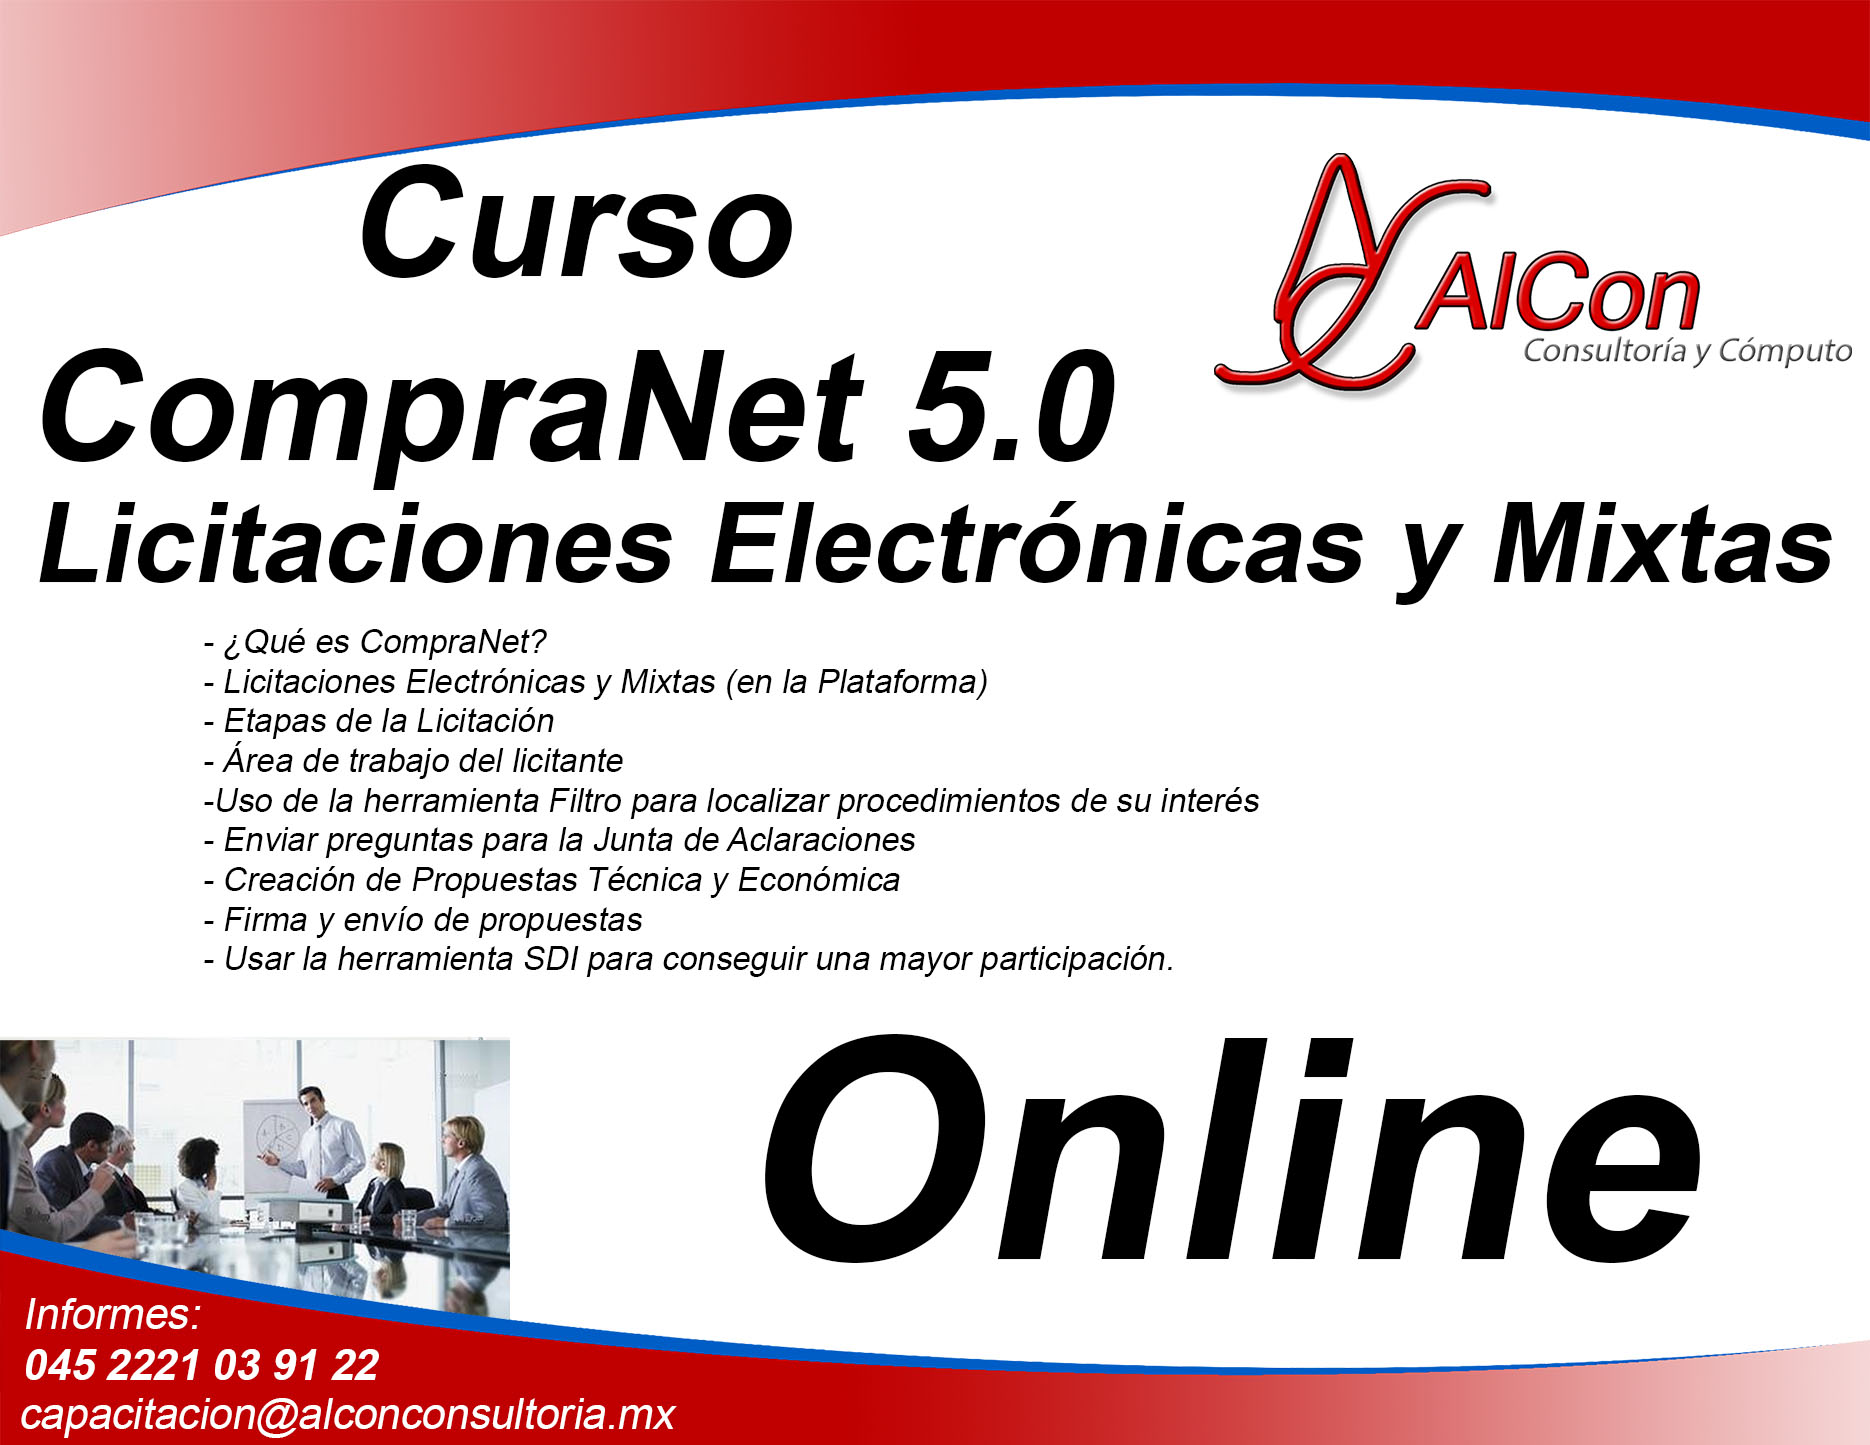 Curso Online de 5.0 AlCon Consulting And Commerce